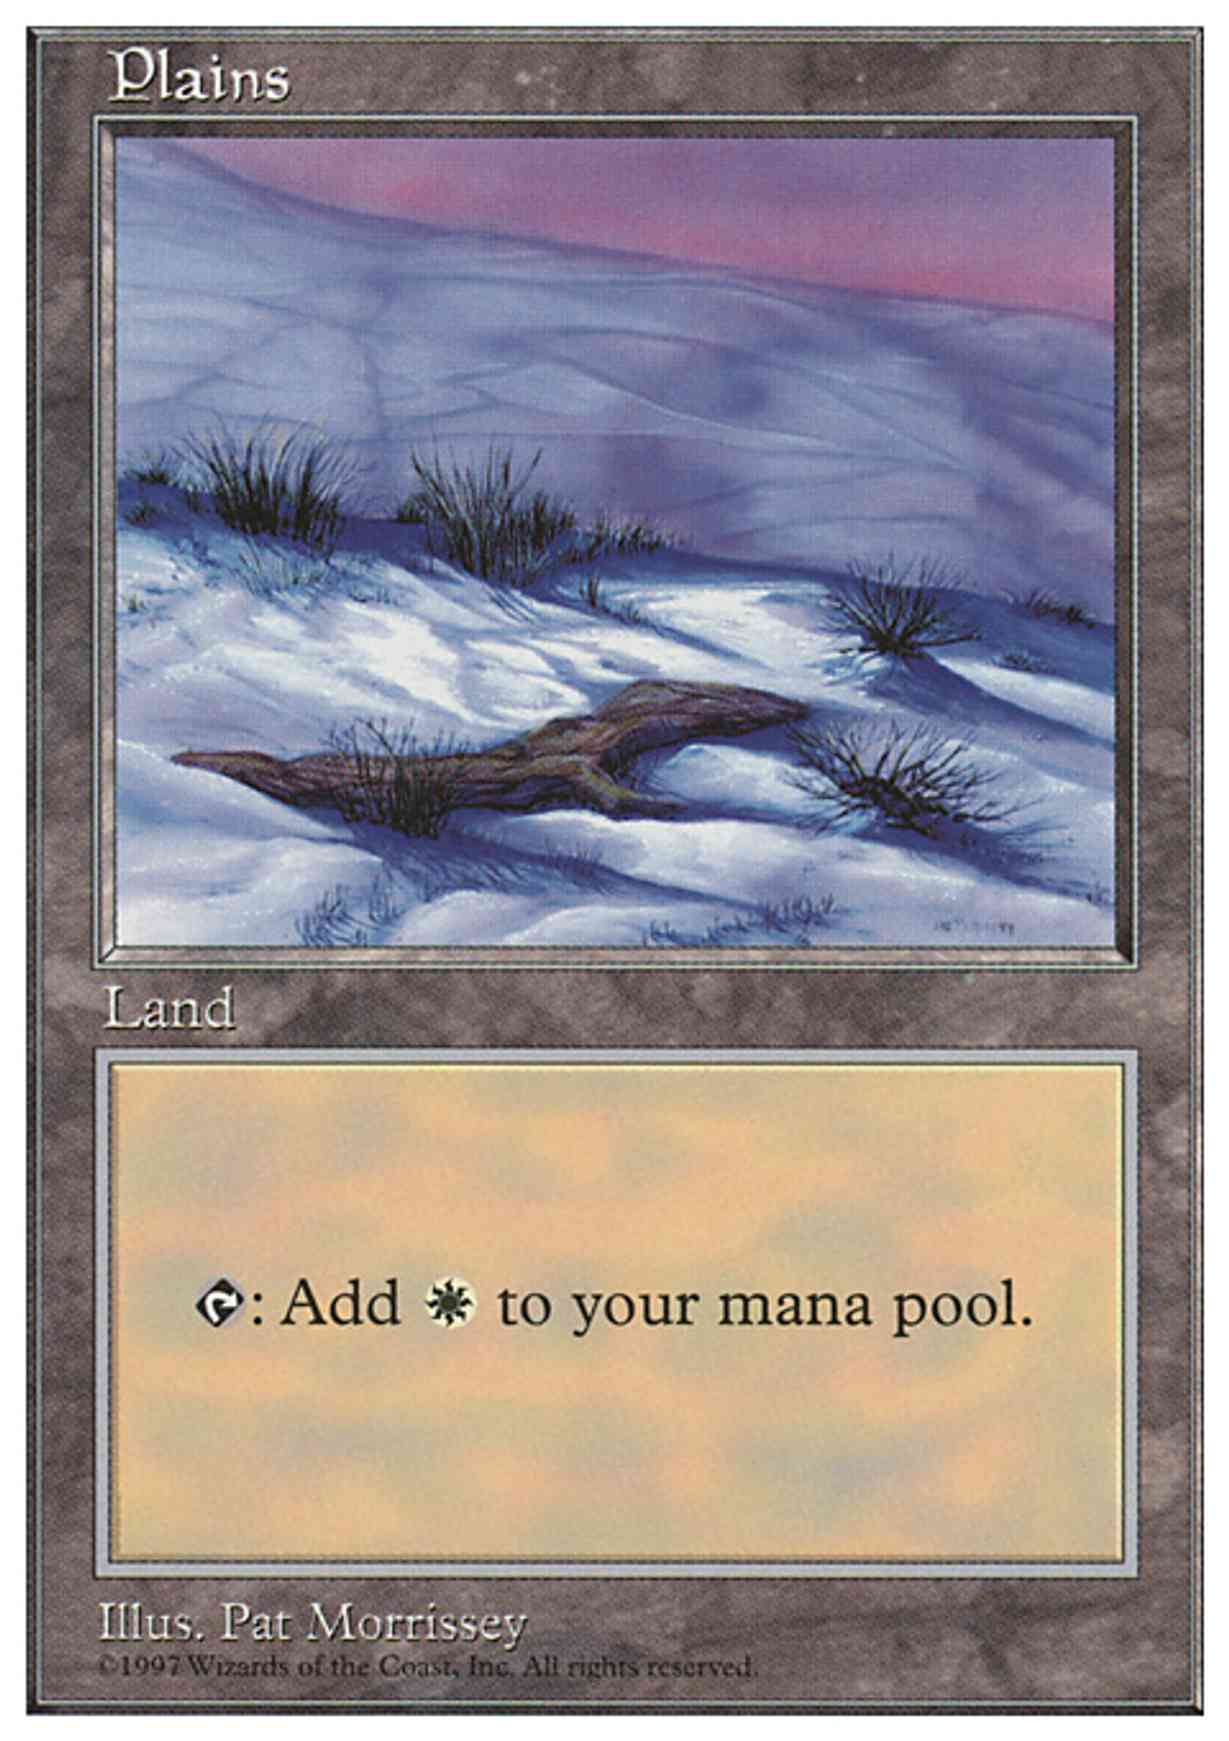 Plains (430) magic card front